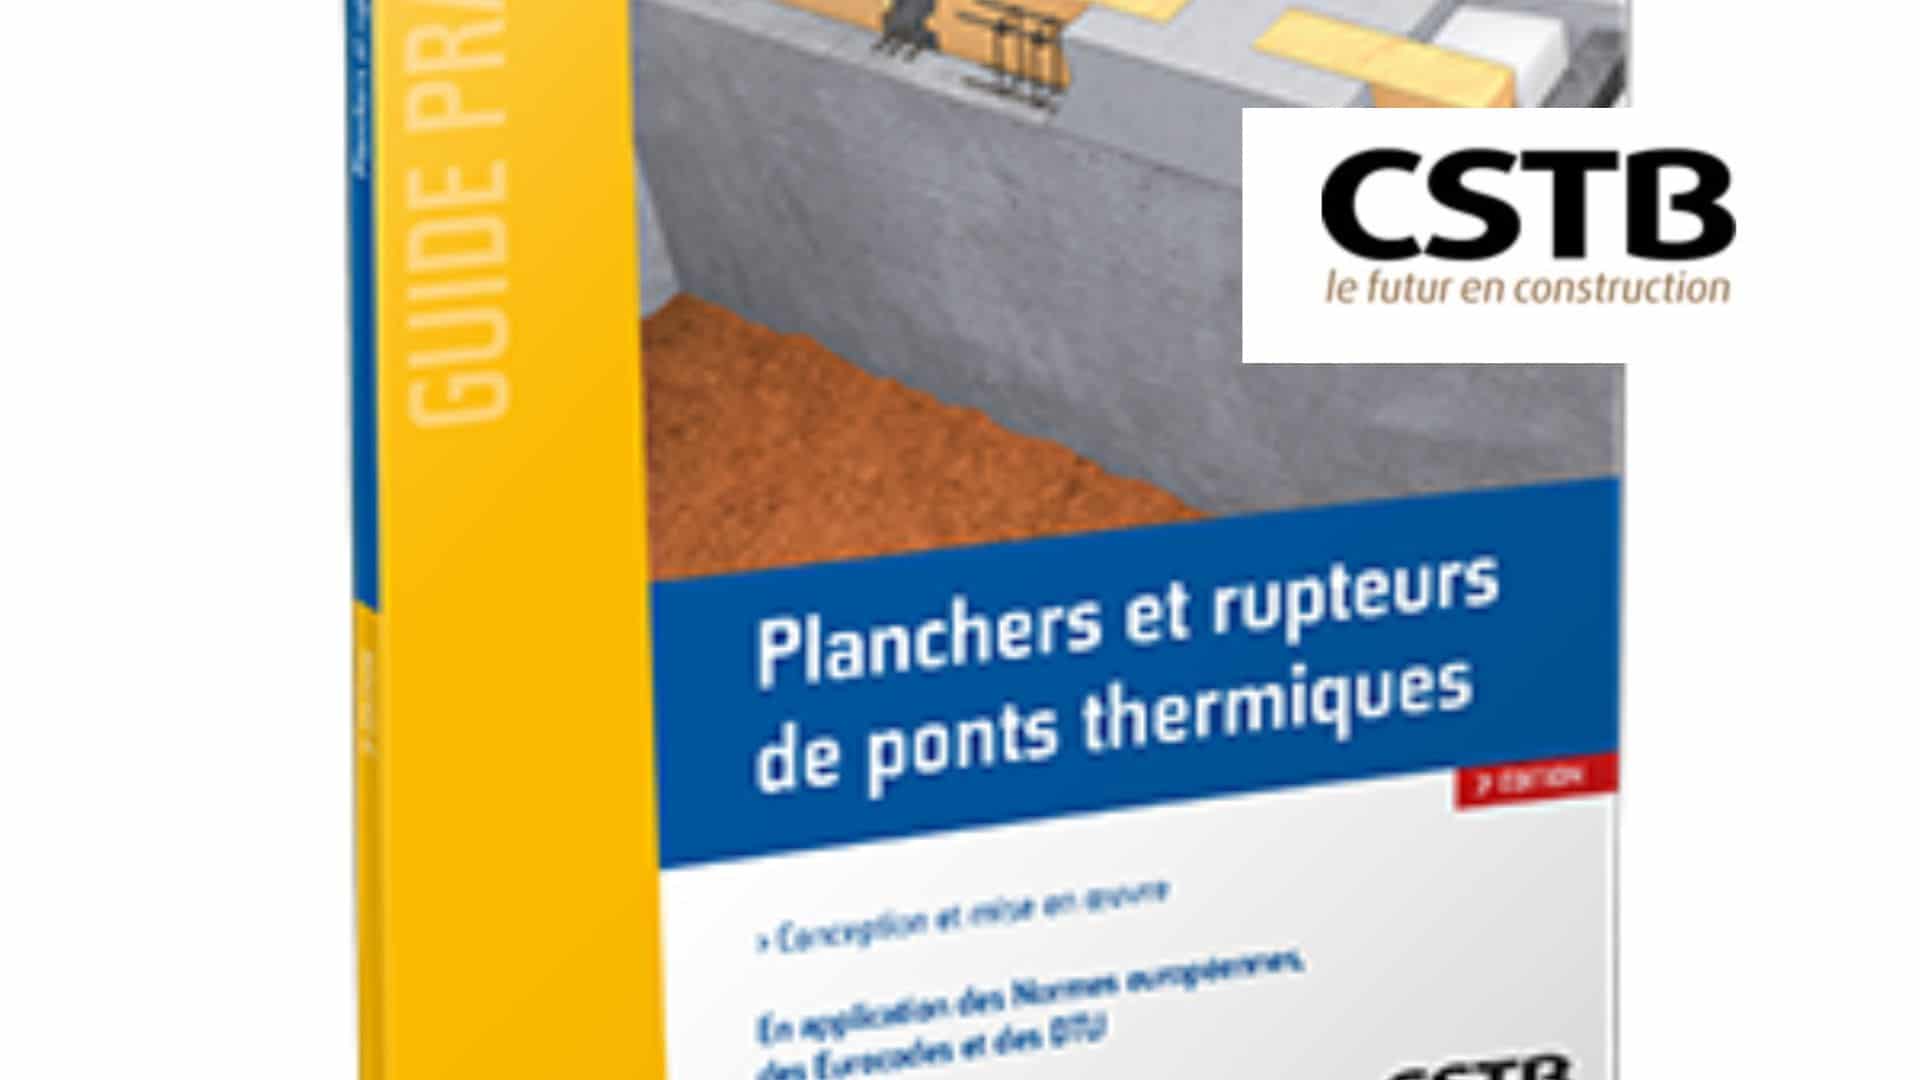 Avis de parution guide pratique CSTB « Planchers et rupteurs de ponts thermiques  3e édition »